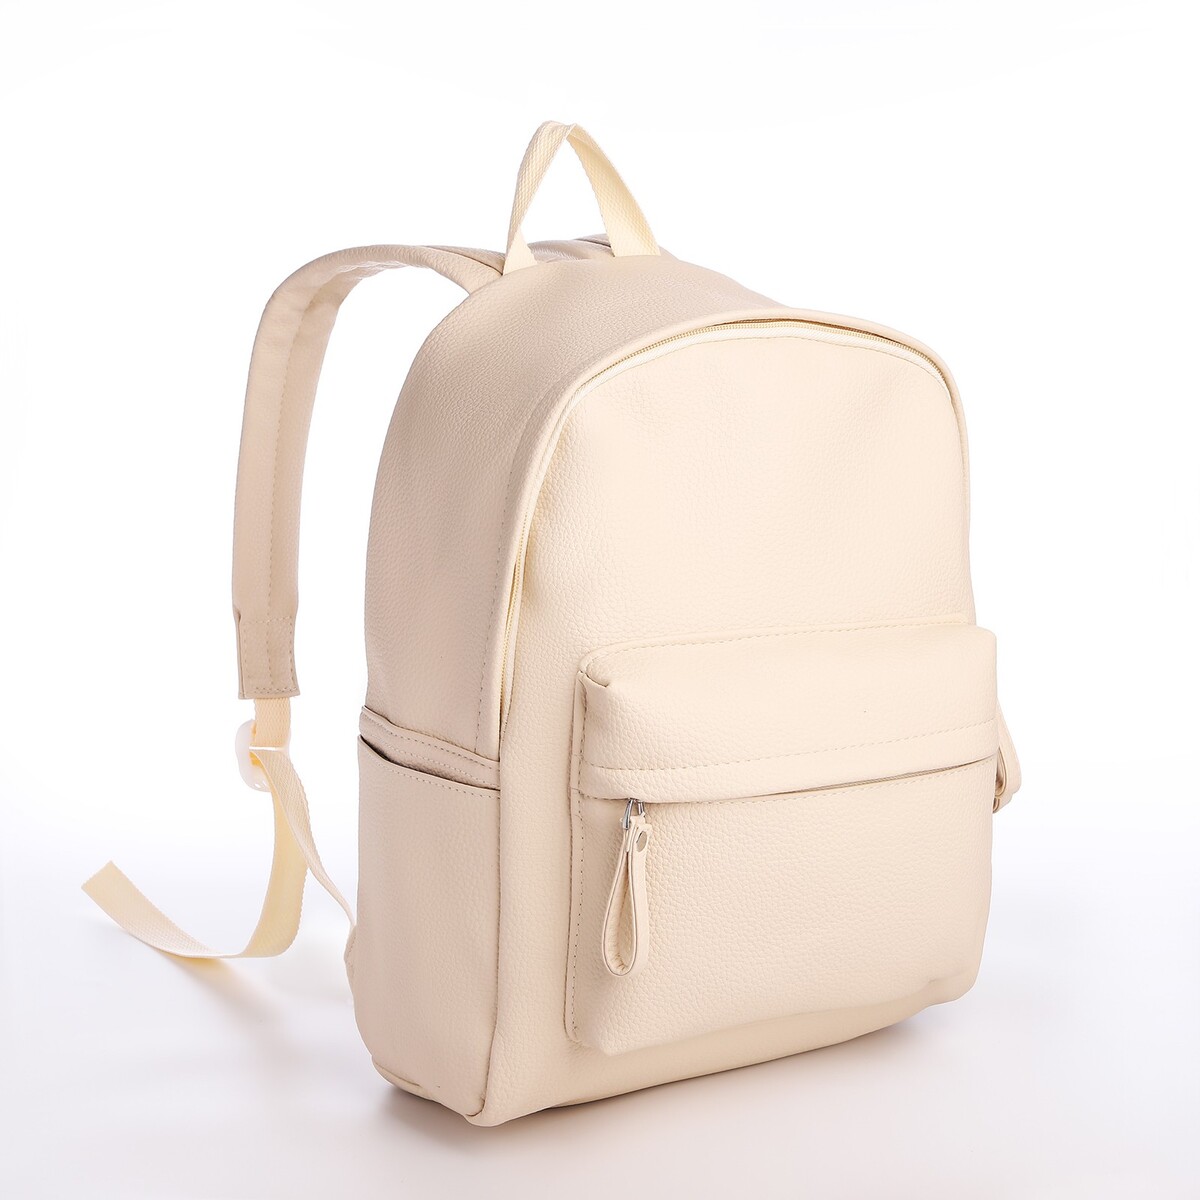 Рюкзак молодежный из искусственной кожи на молнии, 4 кармана, цвет бежевый рюкзак на молнии 3 наружных кармана бежевый